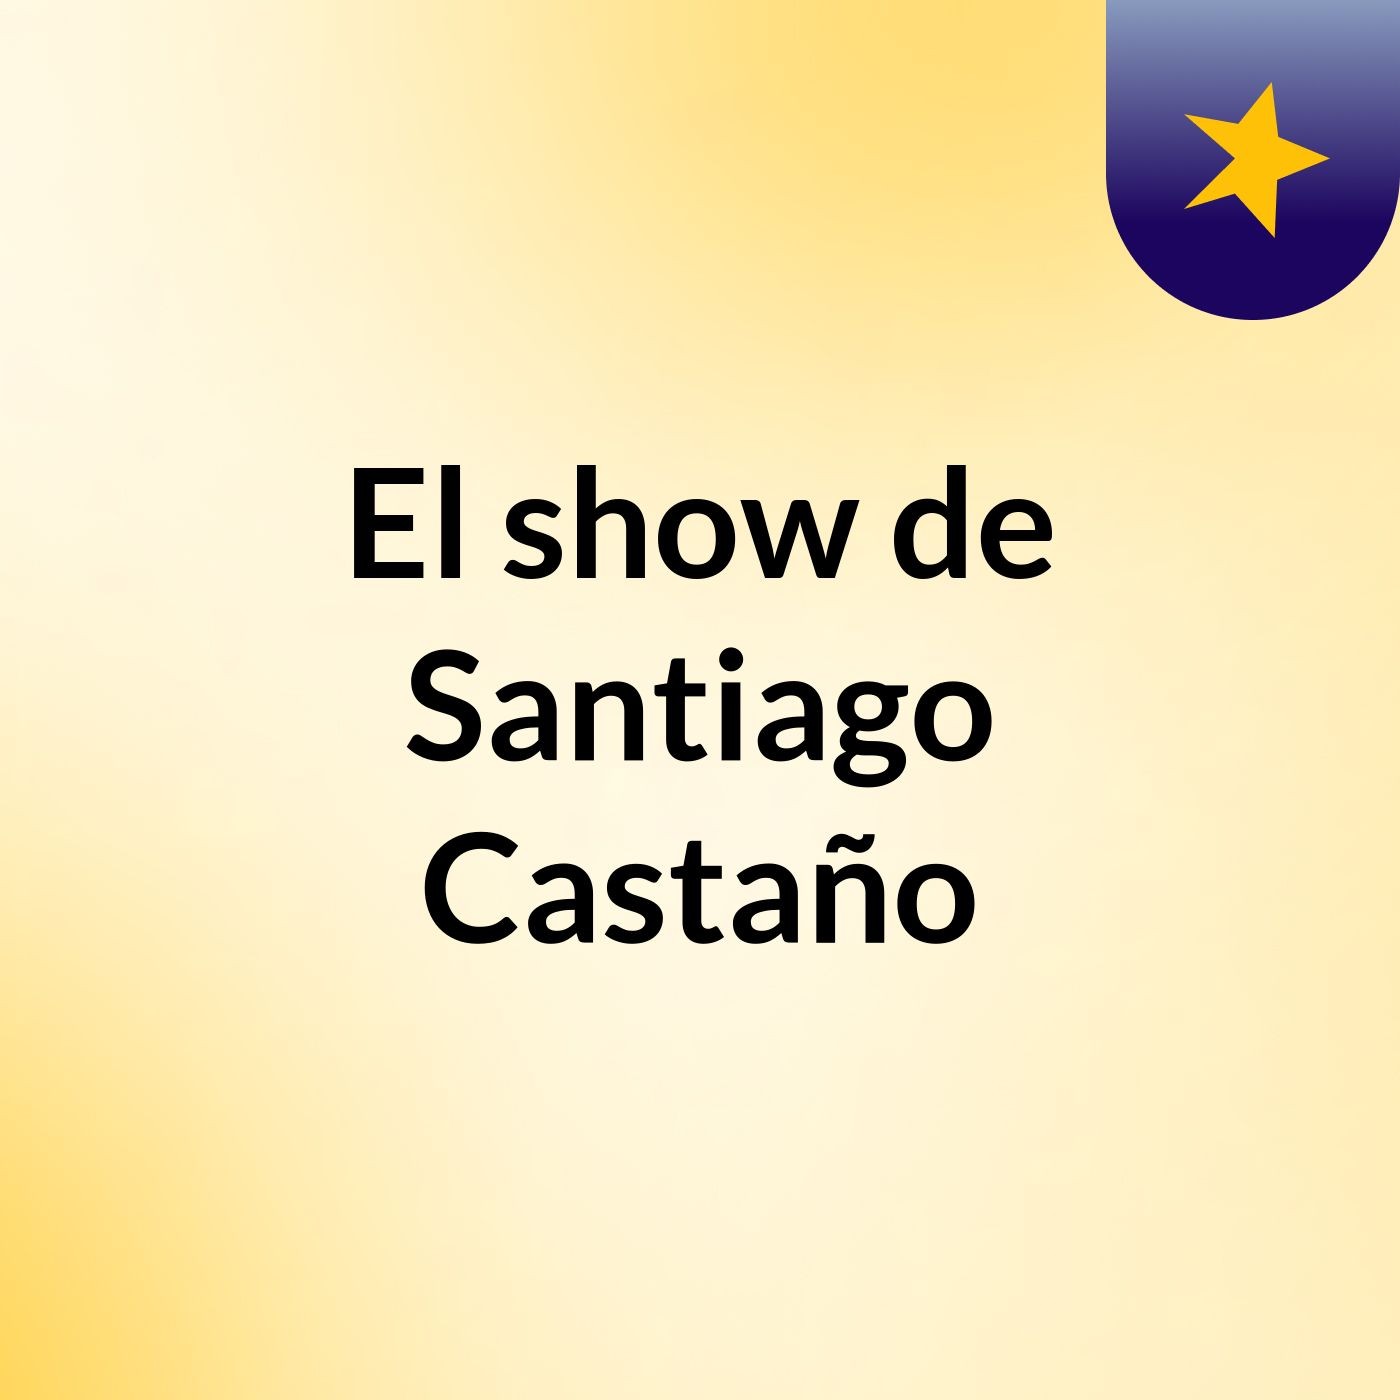 El show de Santiago Castaño